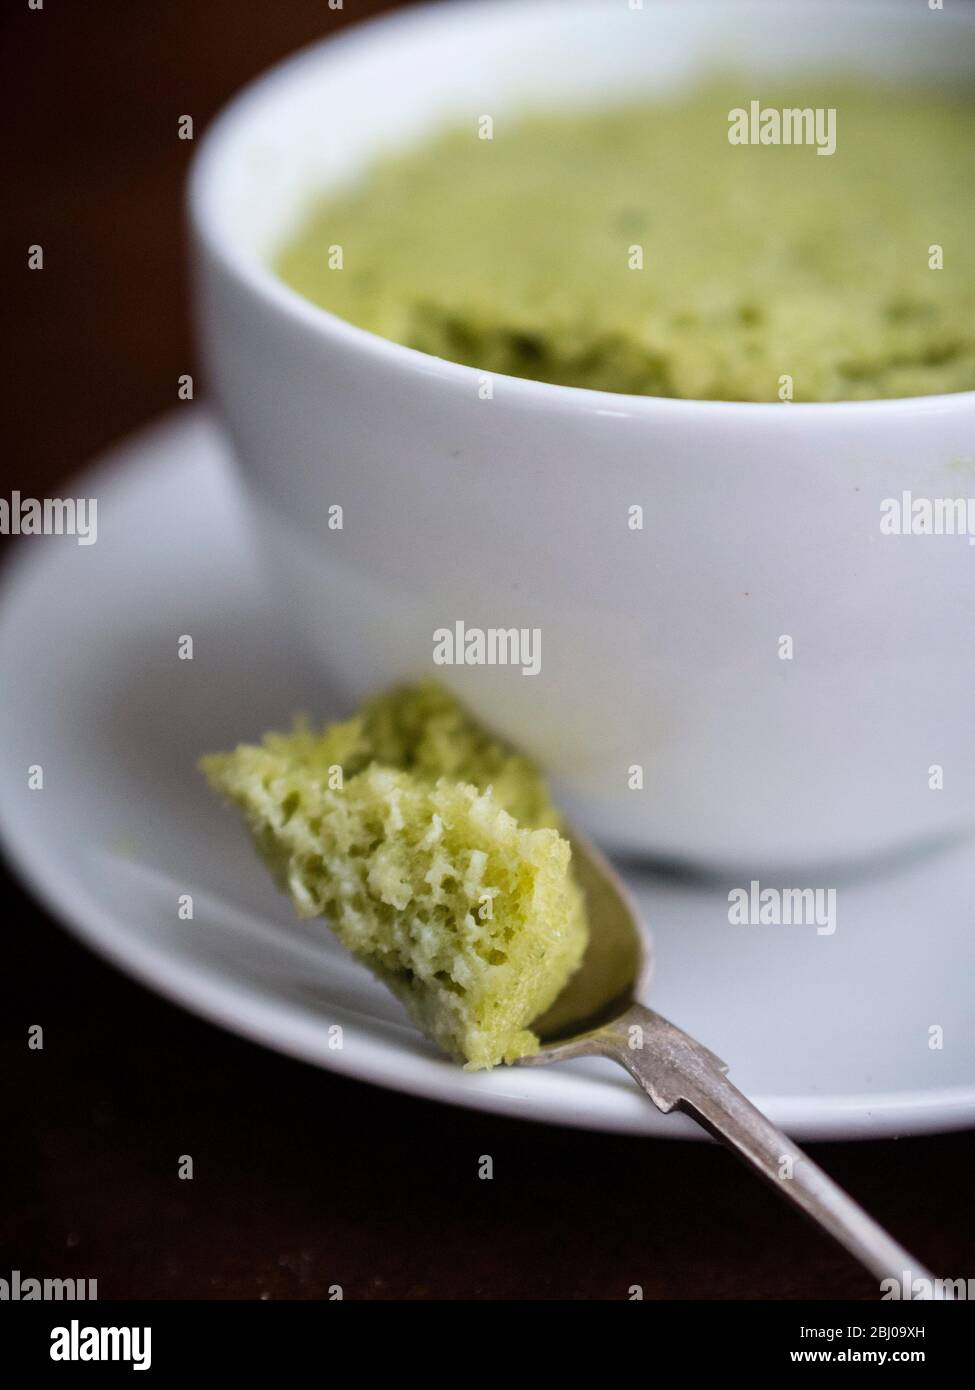 Délicieux gâteau simple composé d'amandes moulues et de thé vert matcha, cuit dans une tasse dans un four à micro-ondes. Banque D'Images